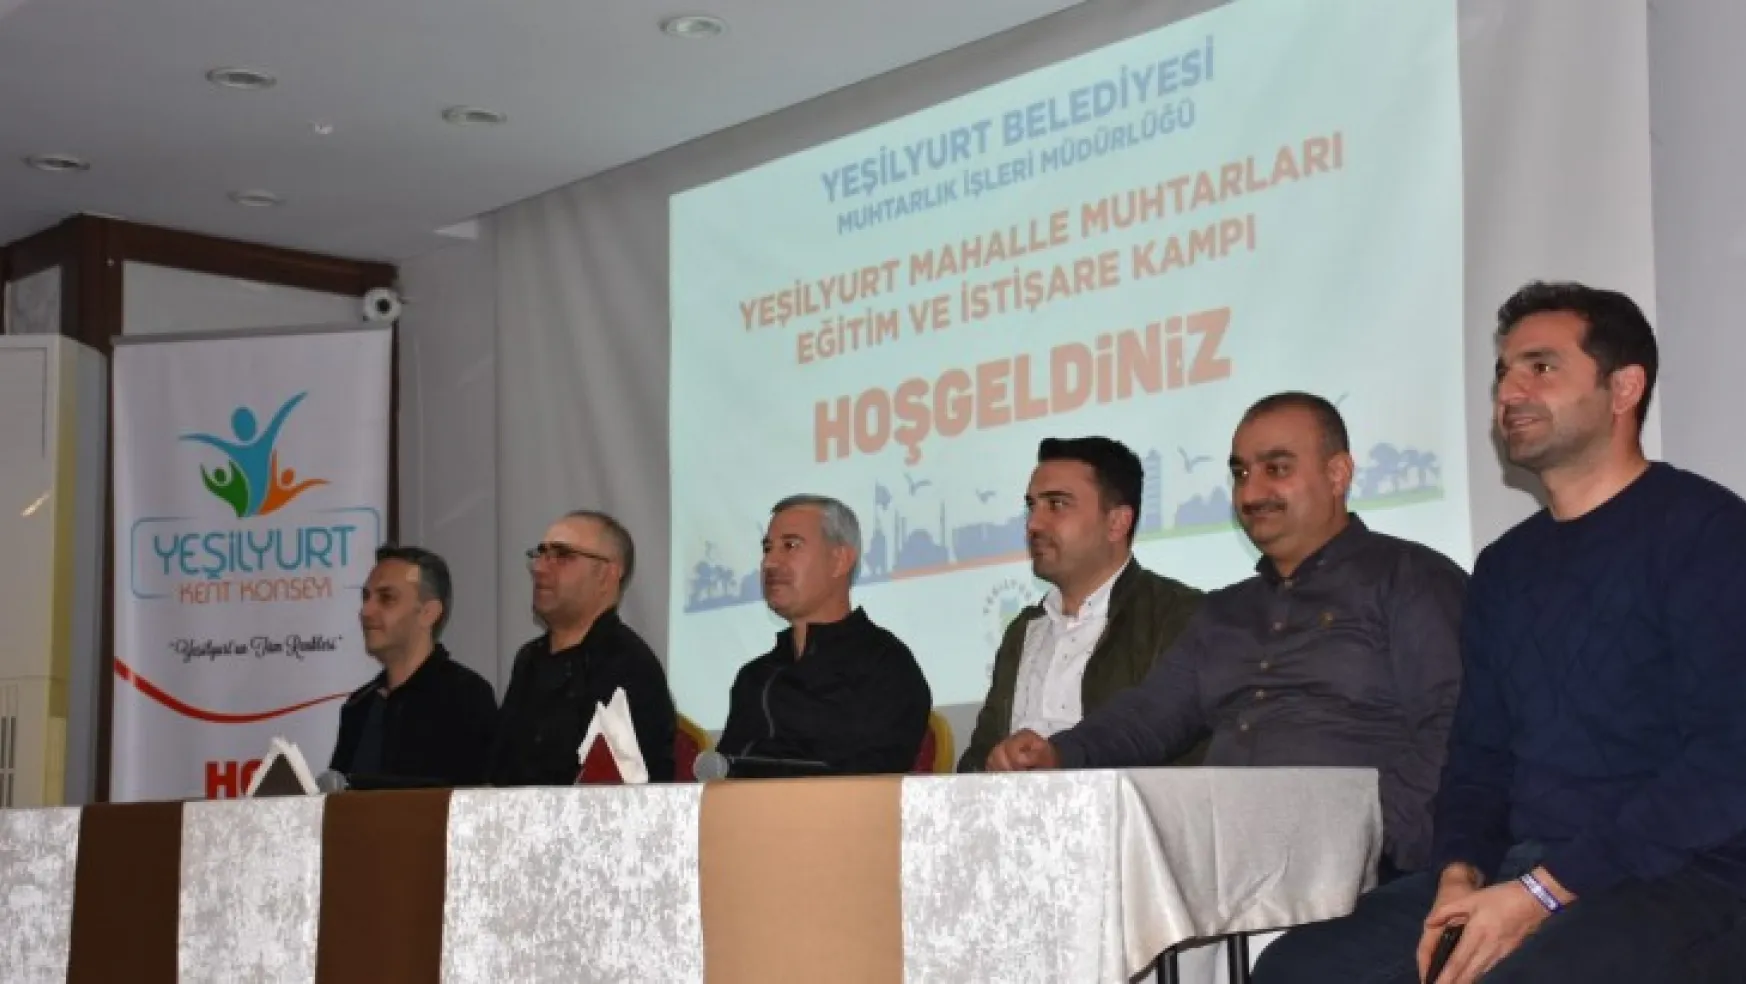 Yeşilyurt Mahalle Muhtarları Eğitim Ve İstişare Kampı Sivas'ta Düzenlendi